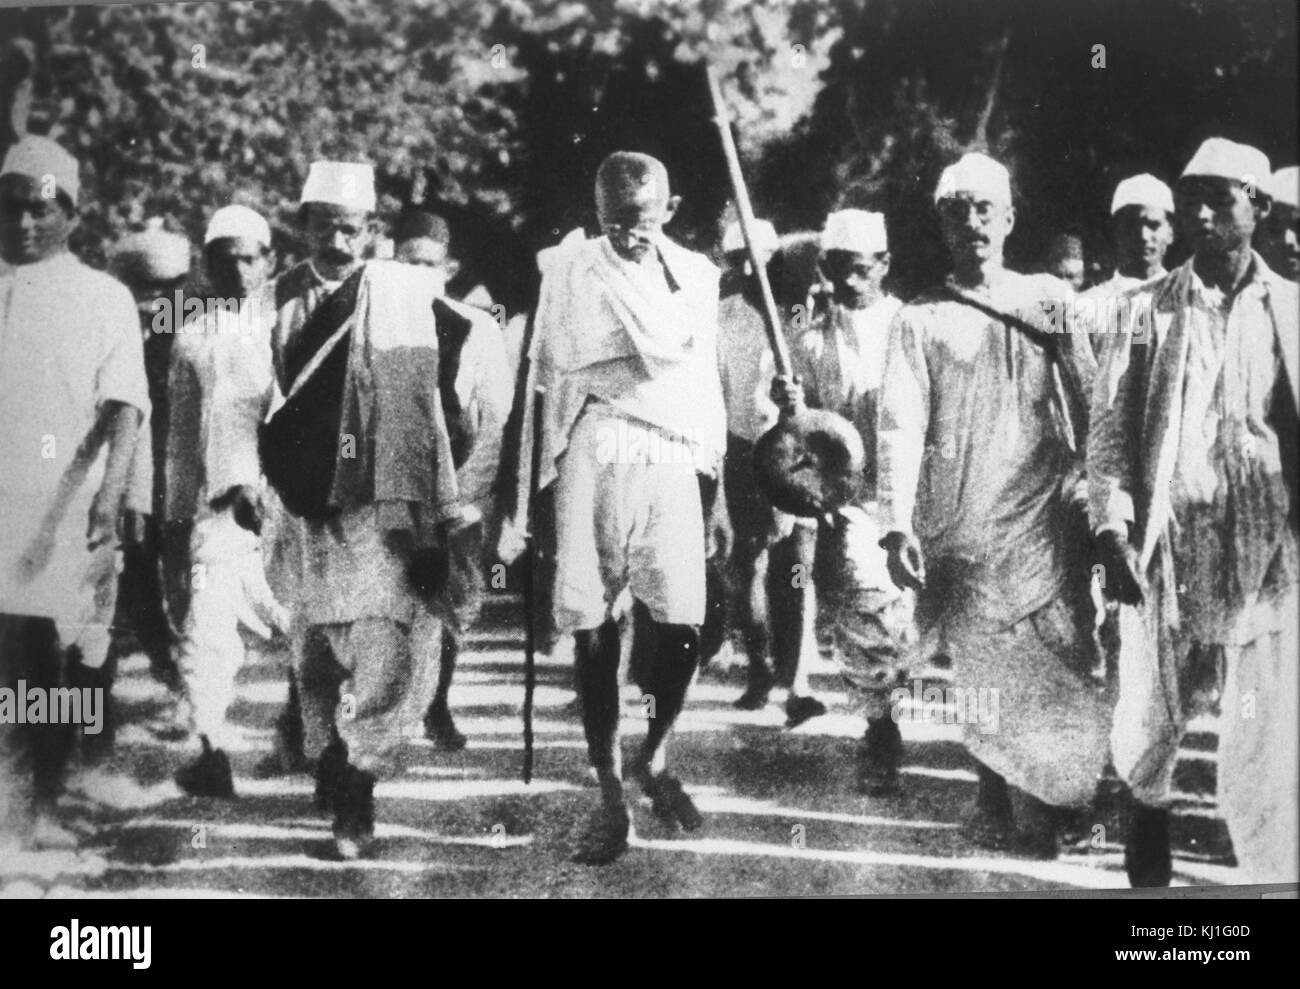 Mohandas Karamchand Gandhi (1869 - 1948) lors d'une réunion avec Jawaharlal Nehru (gauche), 1947. Gandhi a été le principal chef de l'indépendance de l'Inde en mouvement a décidé de l'Inde. Nehru (1889 -1964) était un chef de Congrès national indien au cours de l'indépendance de l'Inde mouvement. Plus tard, il est devenu Premier Ministre Banque D'Images